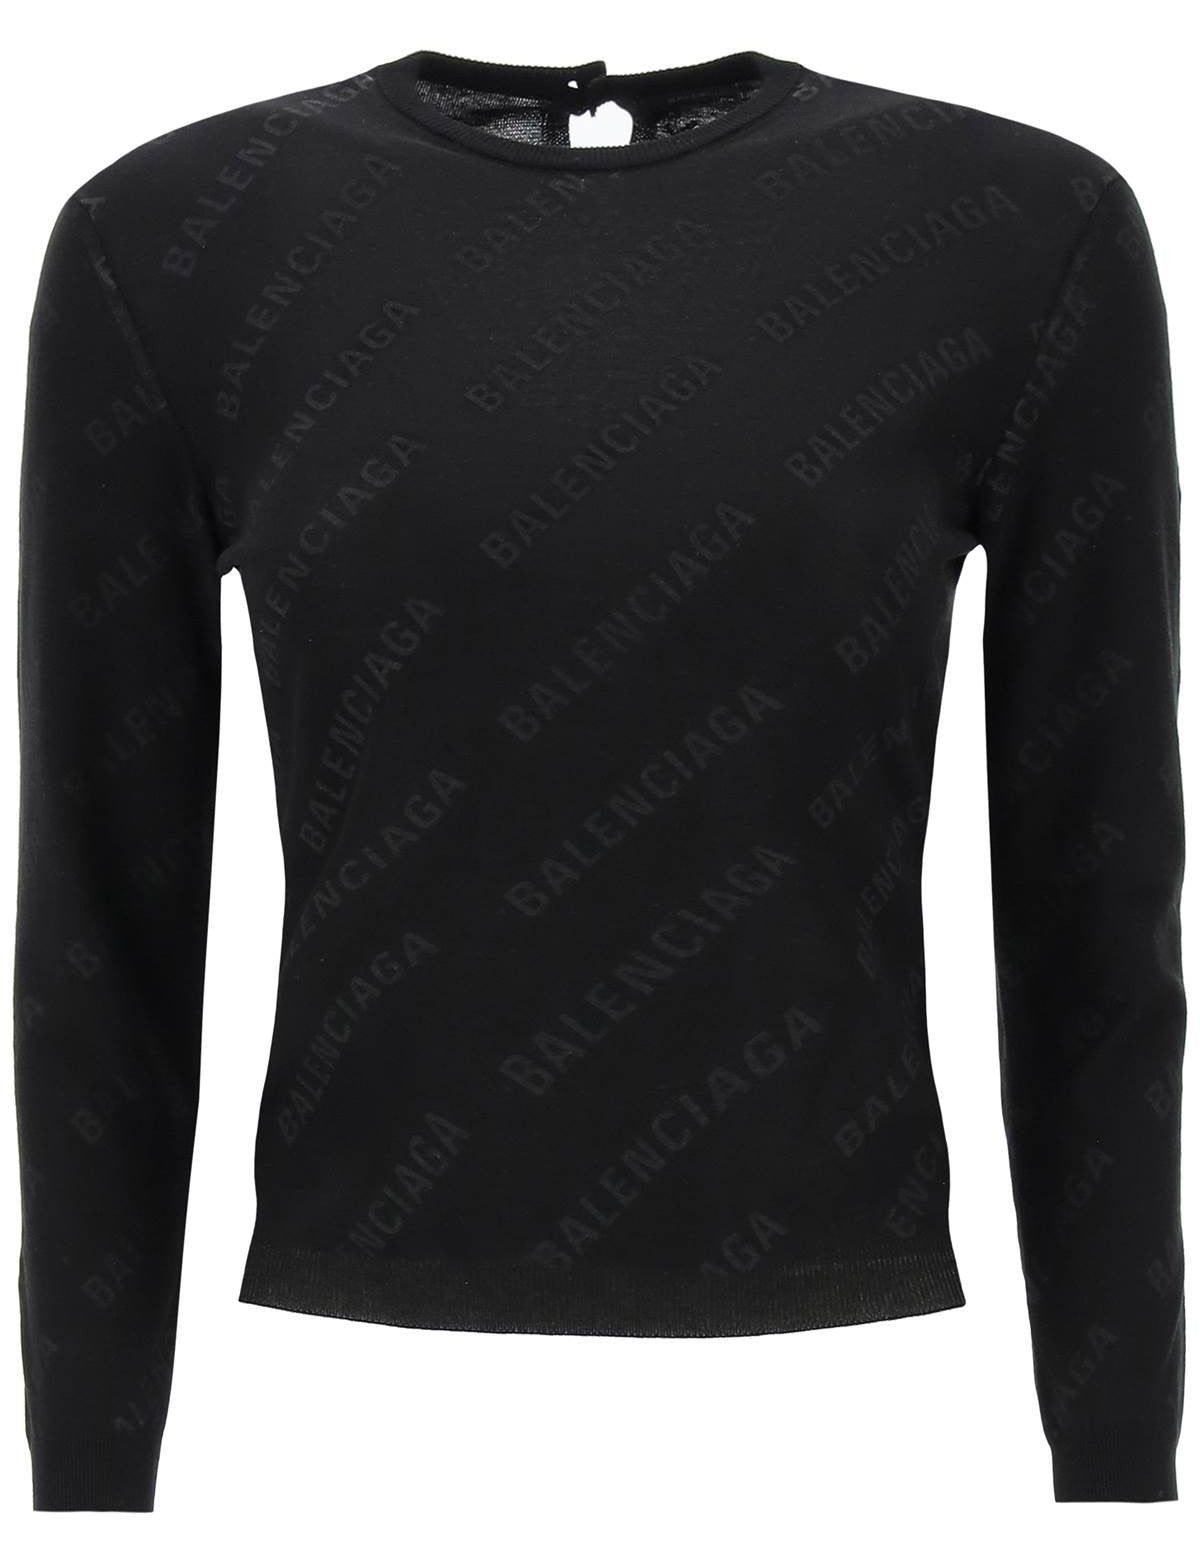 balenciaga-crew-neck-sweater-with-logo-all-over.jpg